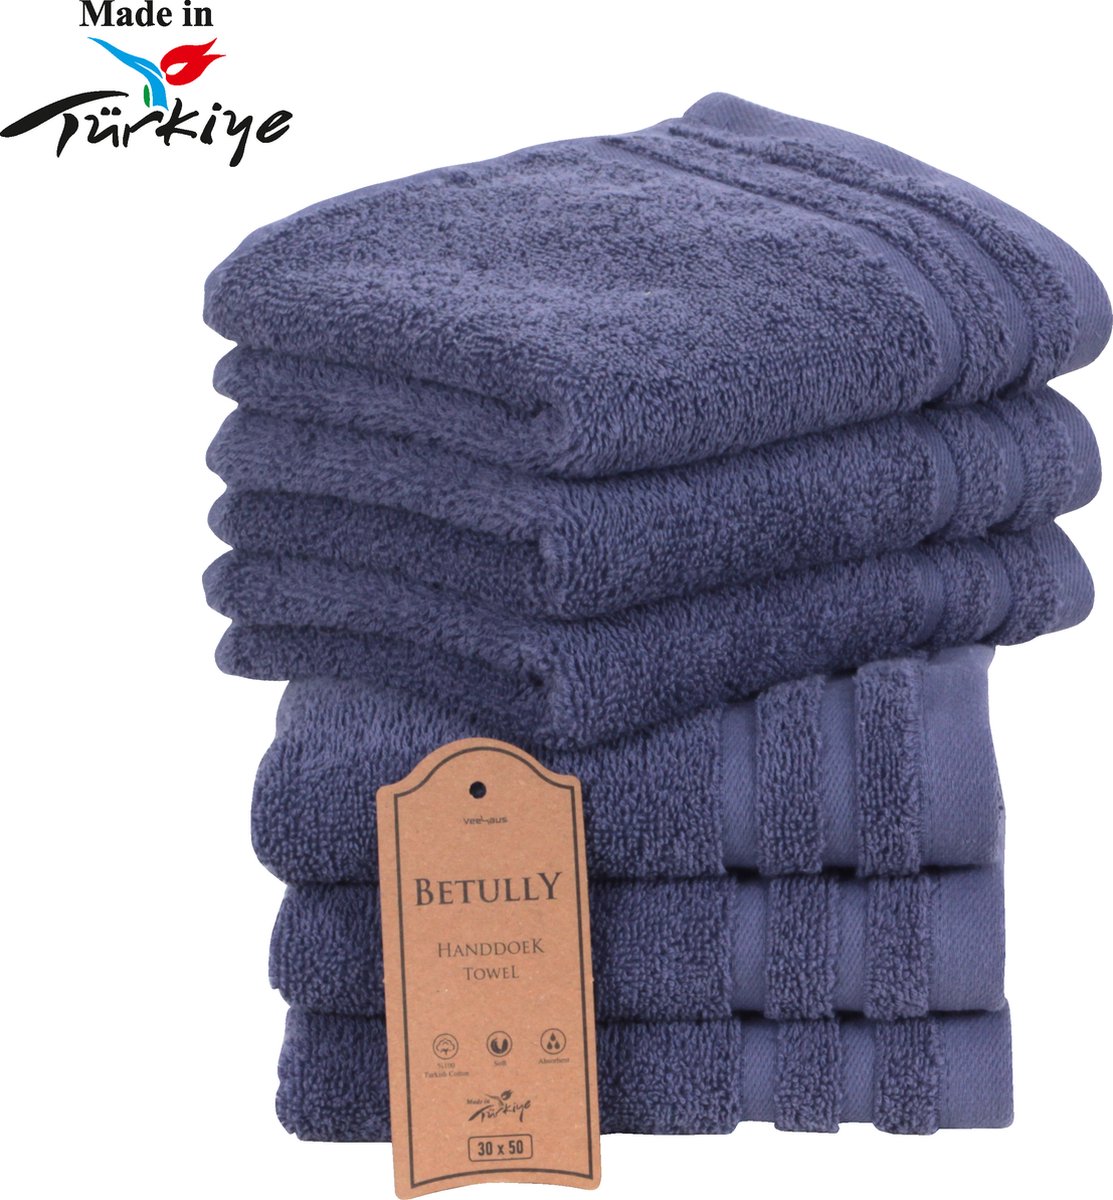 Betully ® - Handdoeken 30 x 50 cm - set van 6 - Hotelkwaliteit Handdoeken – Zware kwaliteit 500 g/m2 Blauw